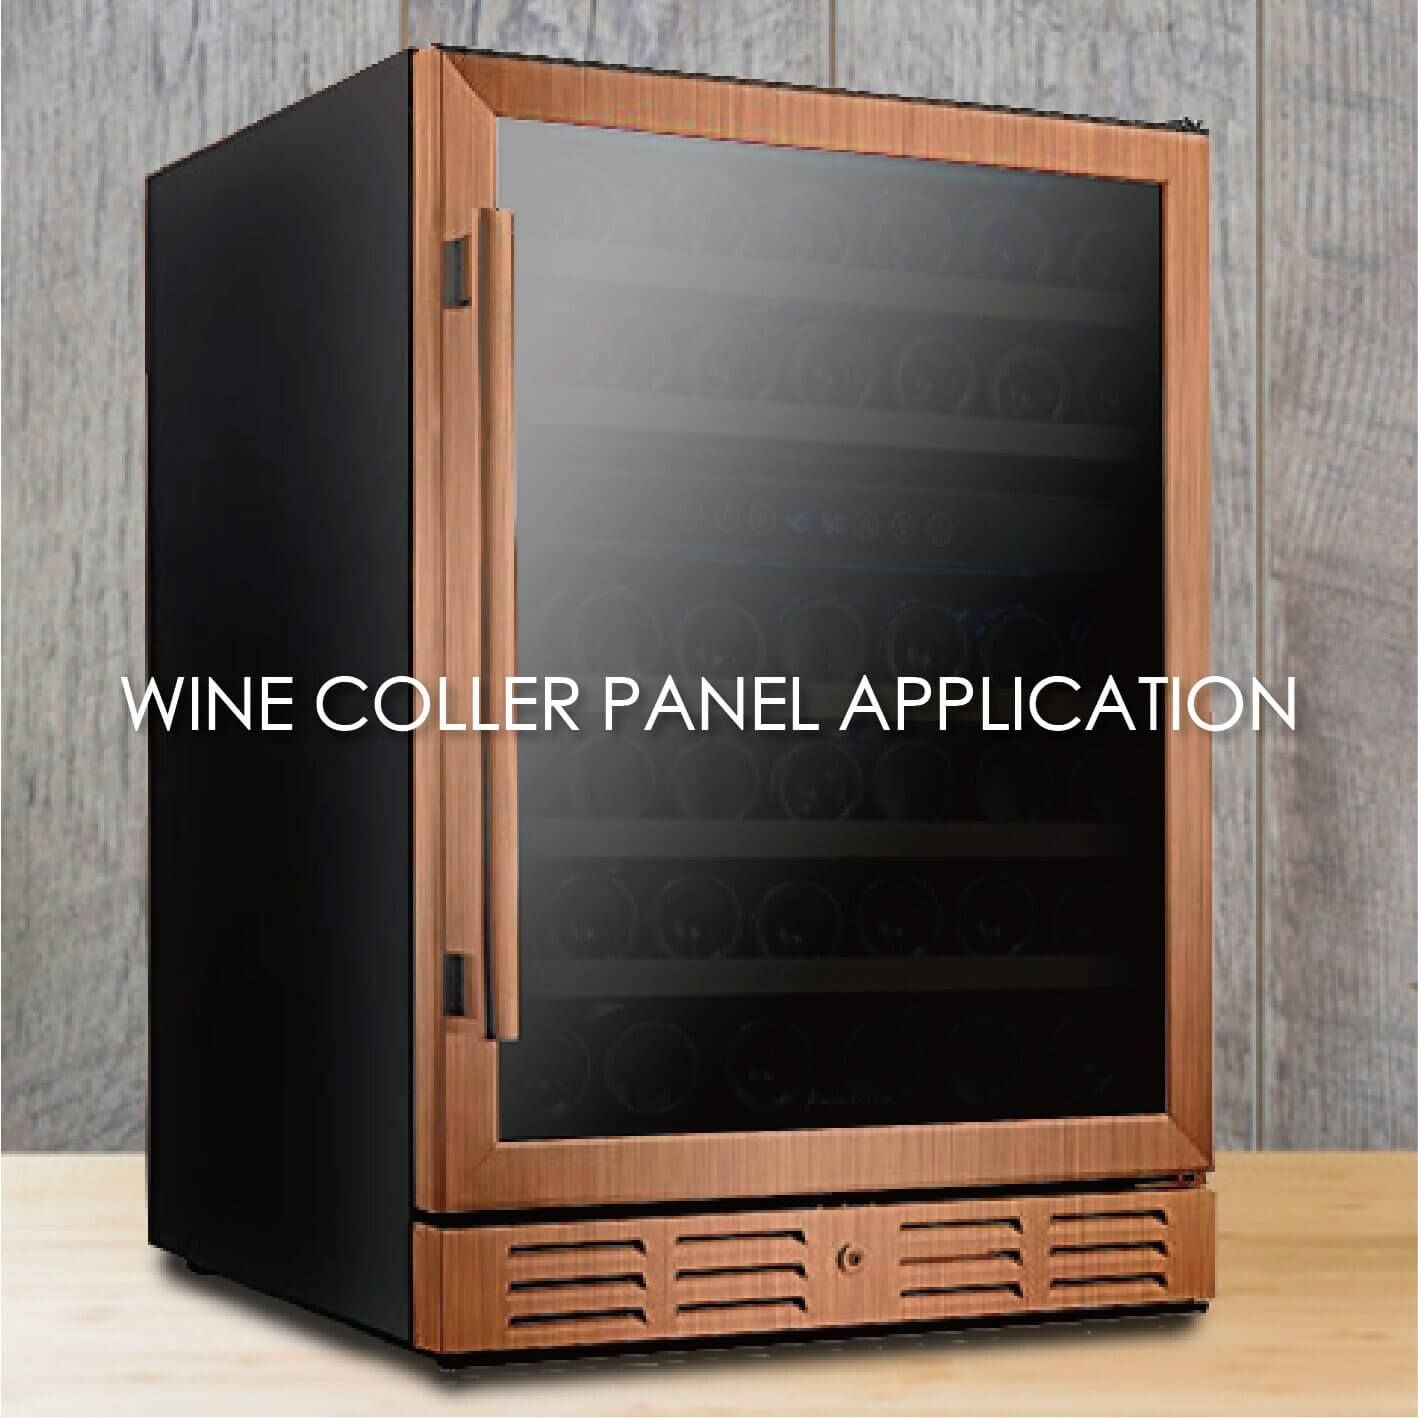 選用木紋覆膜金屬製作酒櫃面板能增加美觀性和耐用性